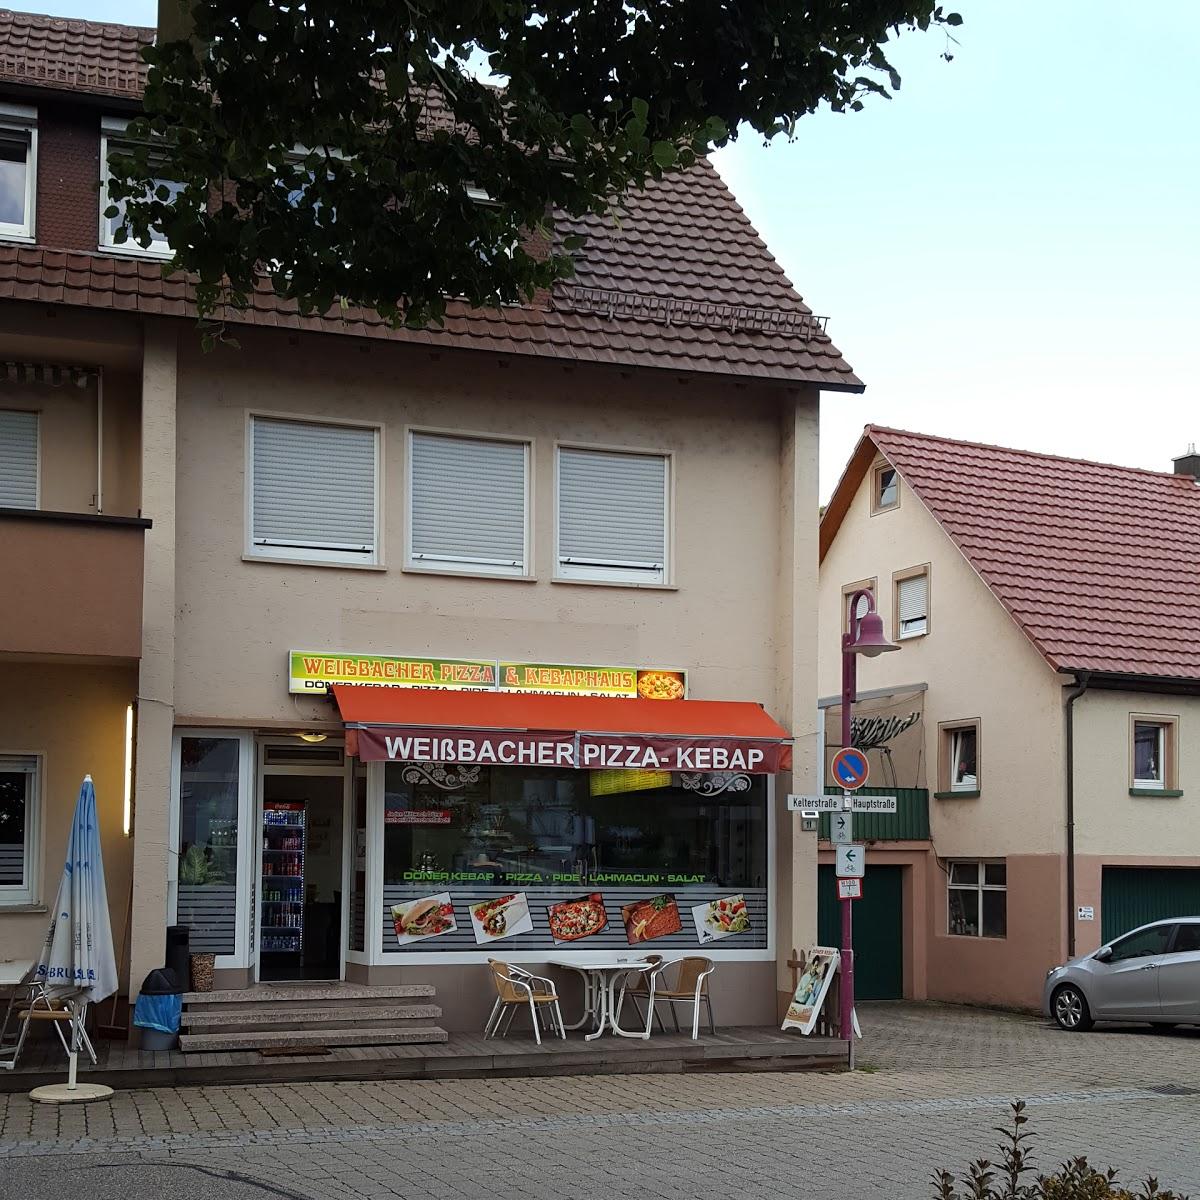 Restaurant "er Pizza & Kebabhaus" in  Weißbach